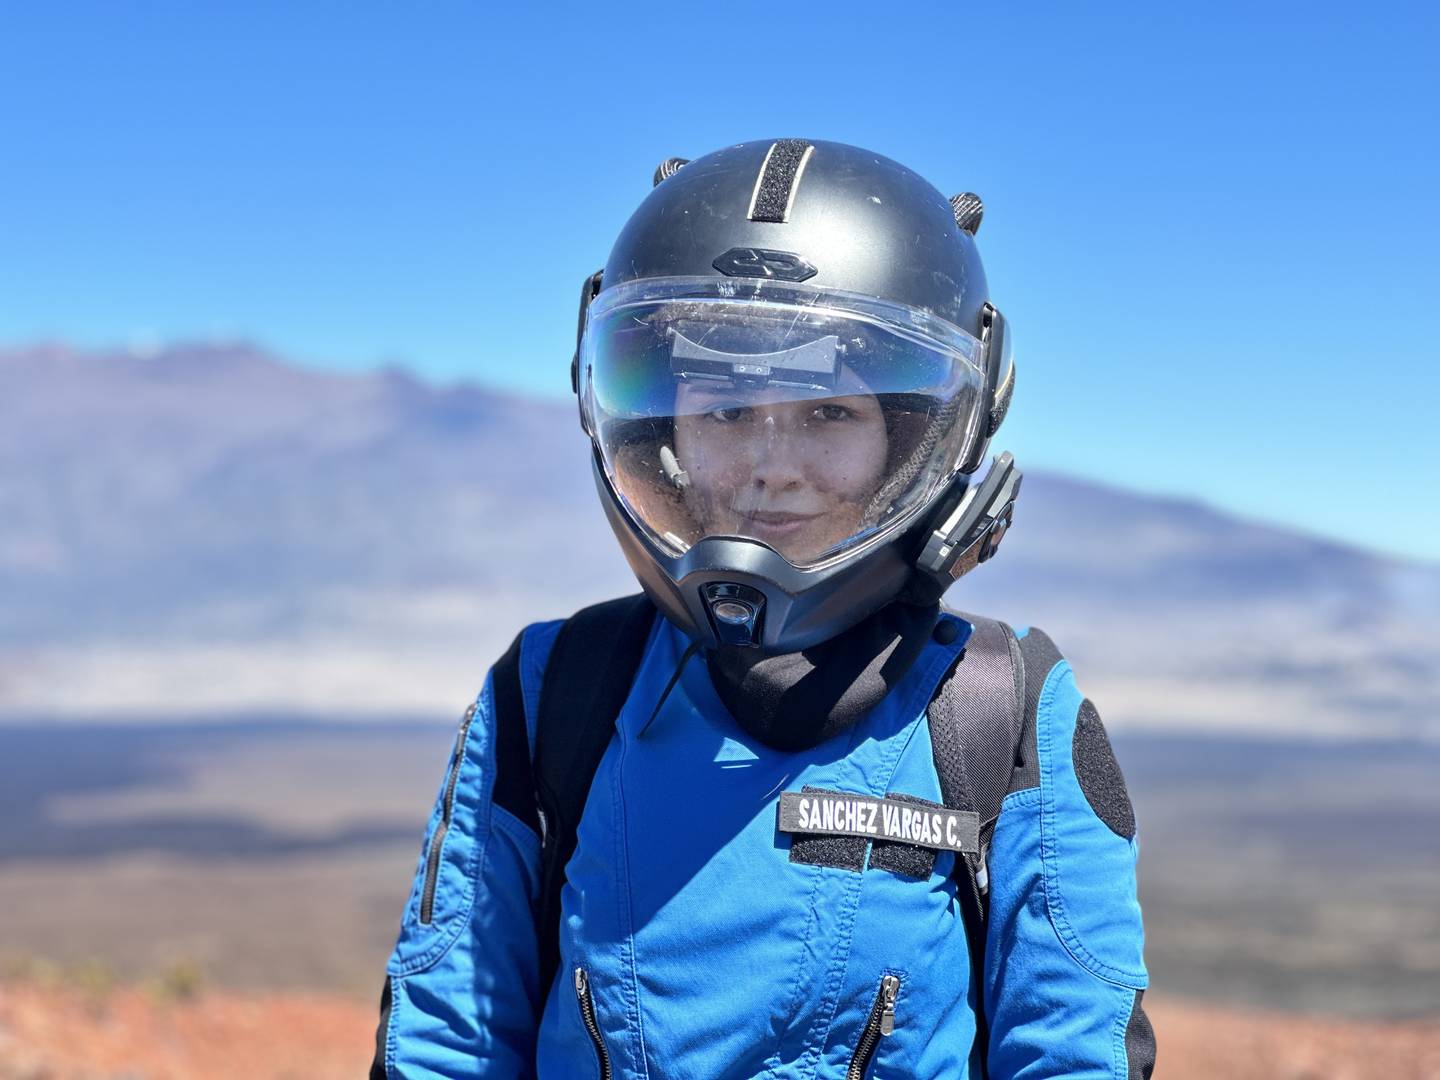 Catalina Sánchez Vargas tuvo una experiencia de gravedad cero, como las que viven los astronautas.

Fotografía: Cortesía